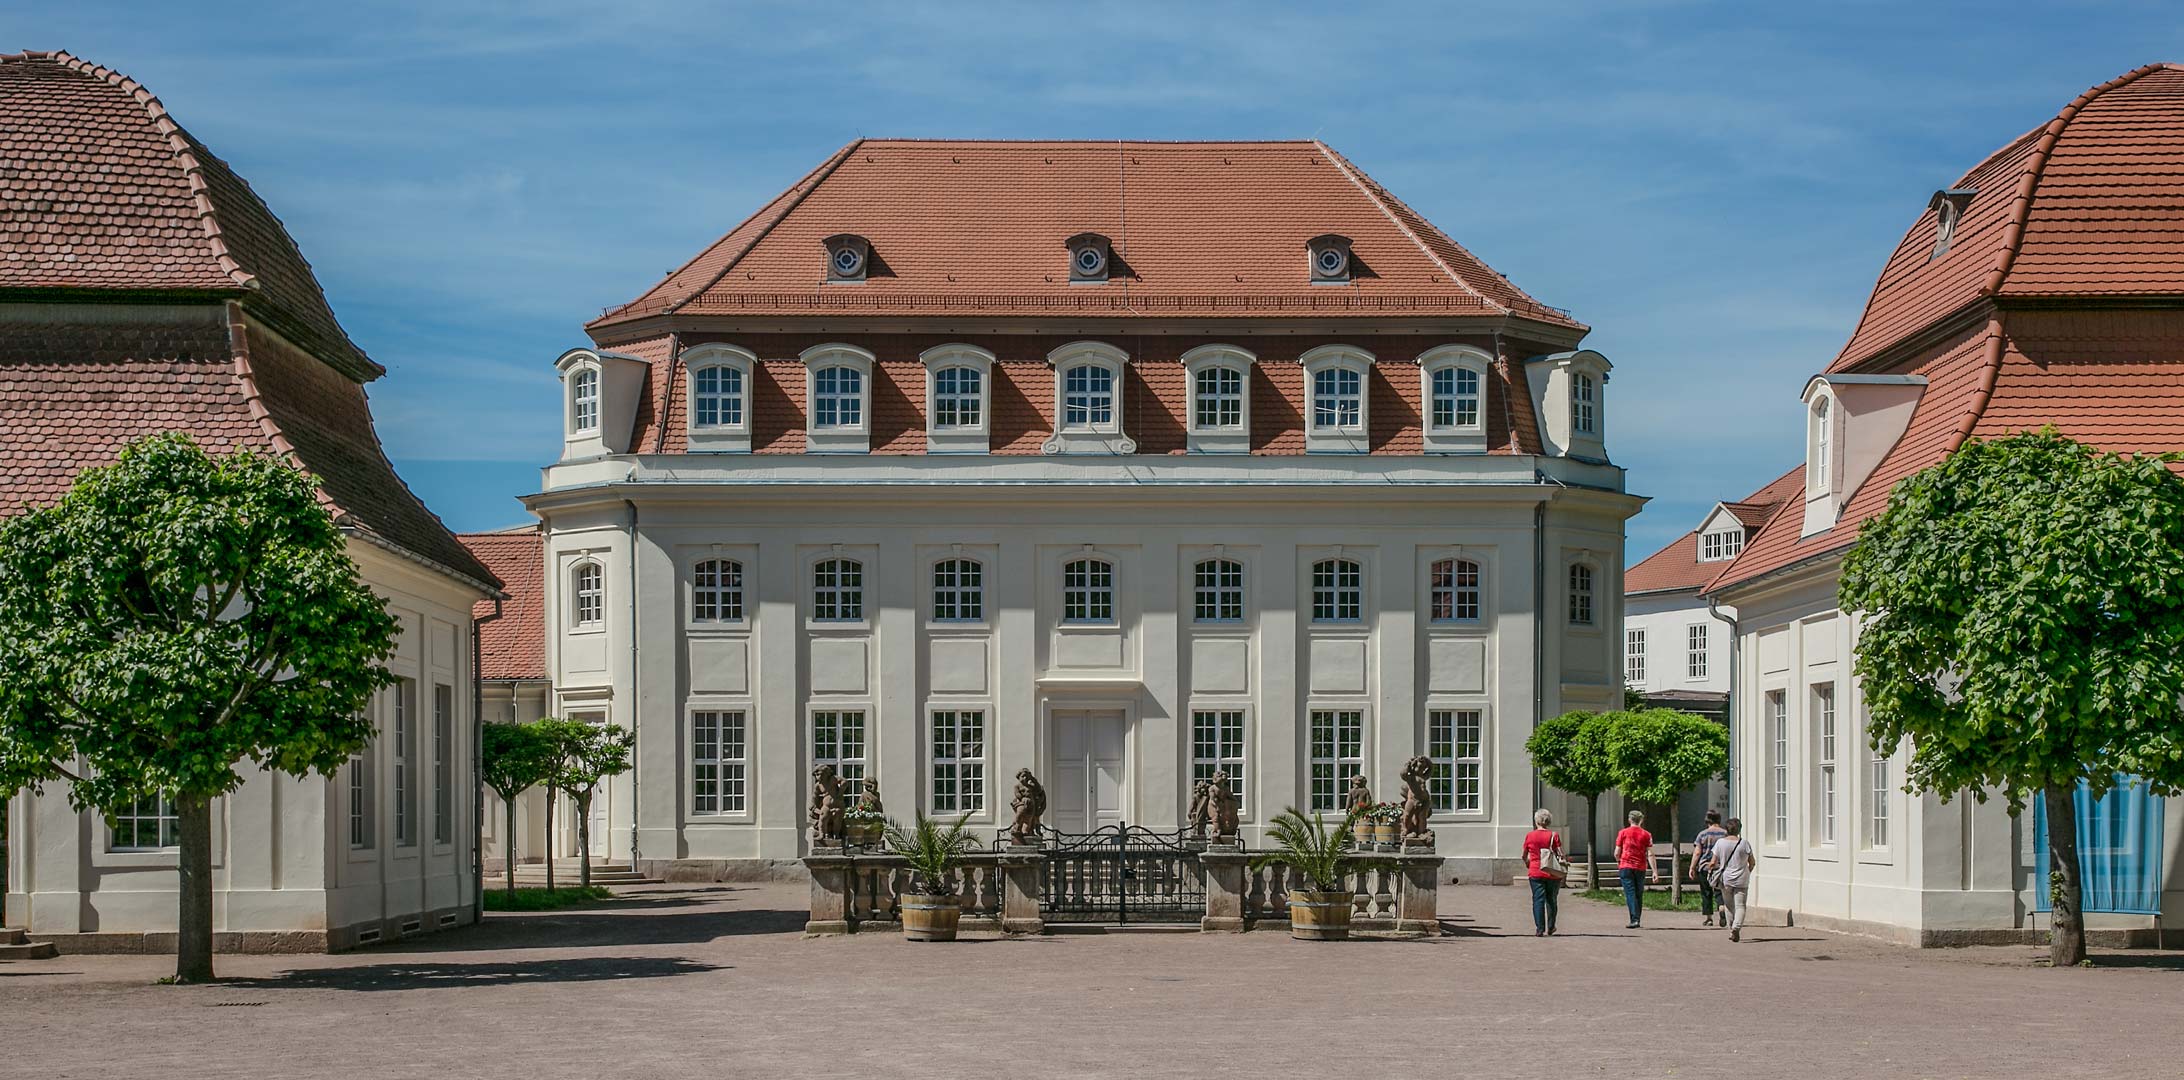 Startseite Historische Kuranlagen Goethe Theater Bad Lauchstadt